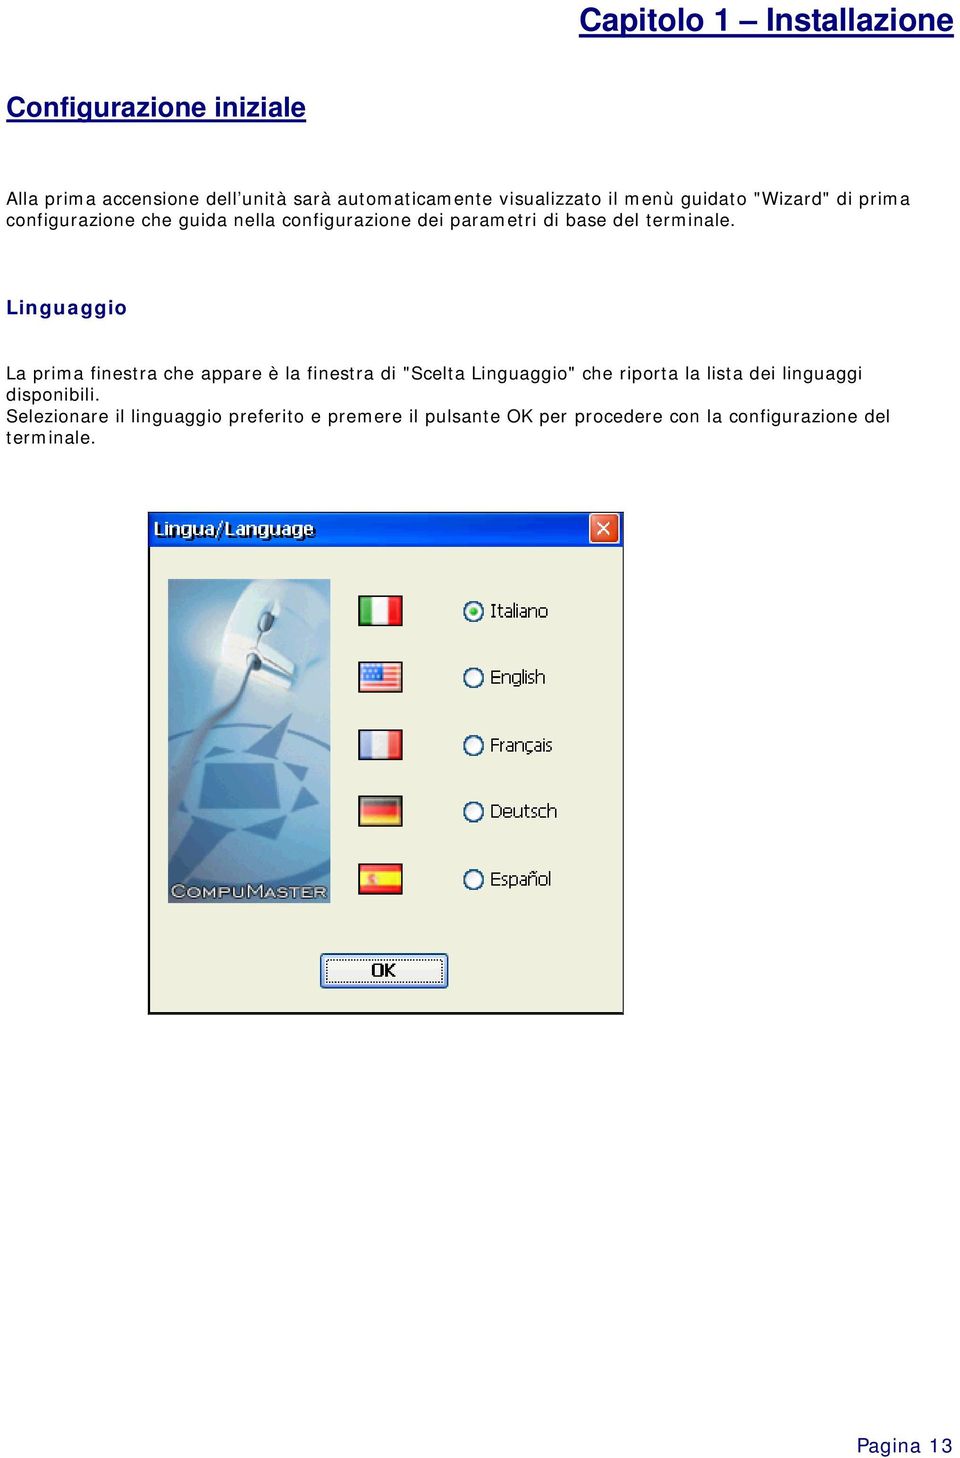 Linguaggio La prima finestra che appare è la finestra di "Scelta Linguaggio" che riporta la lista dei linguaggi